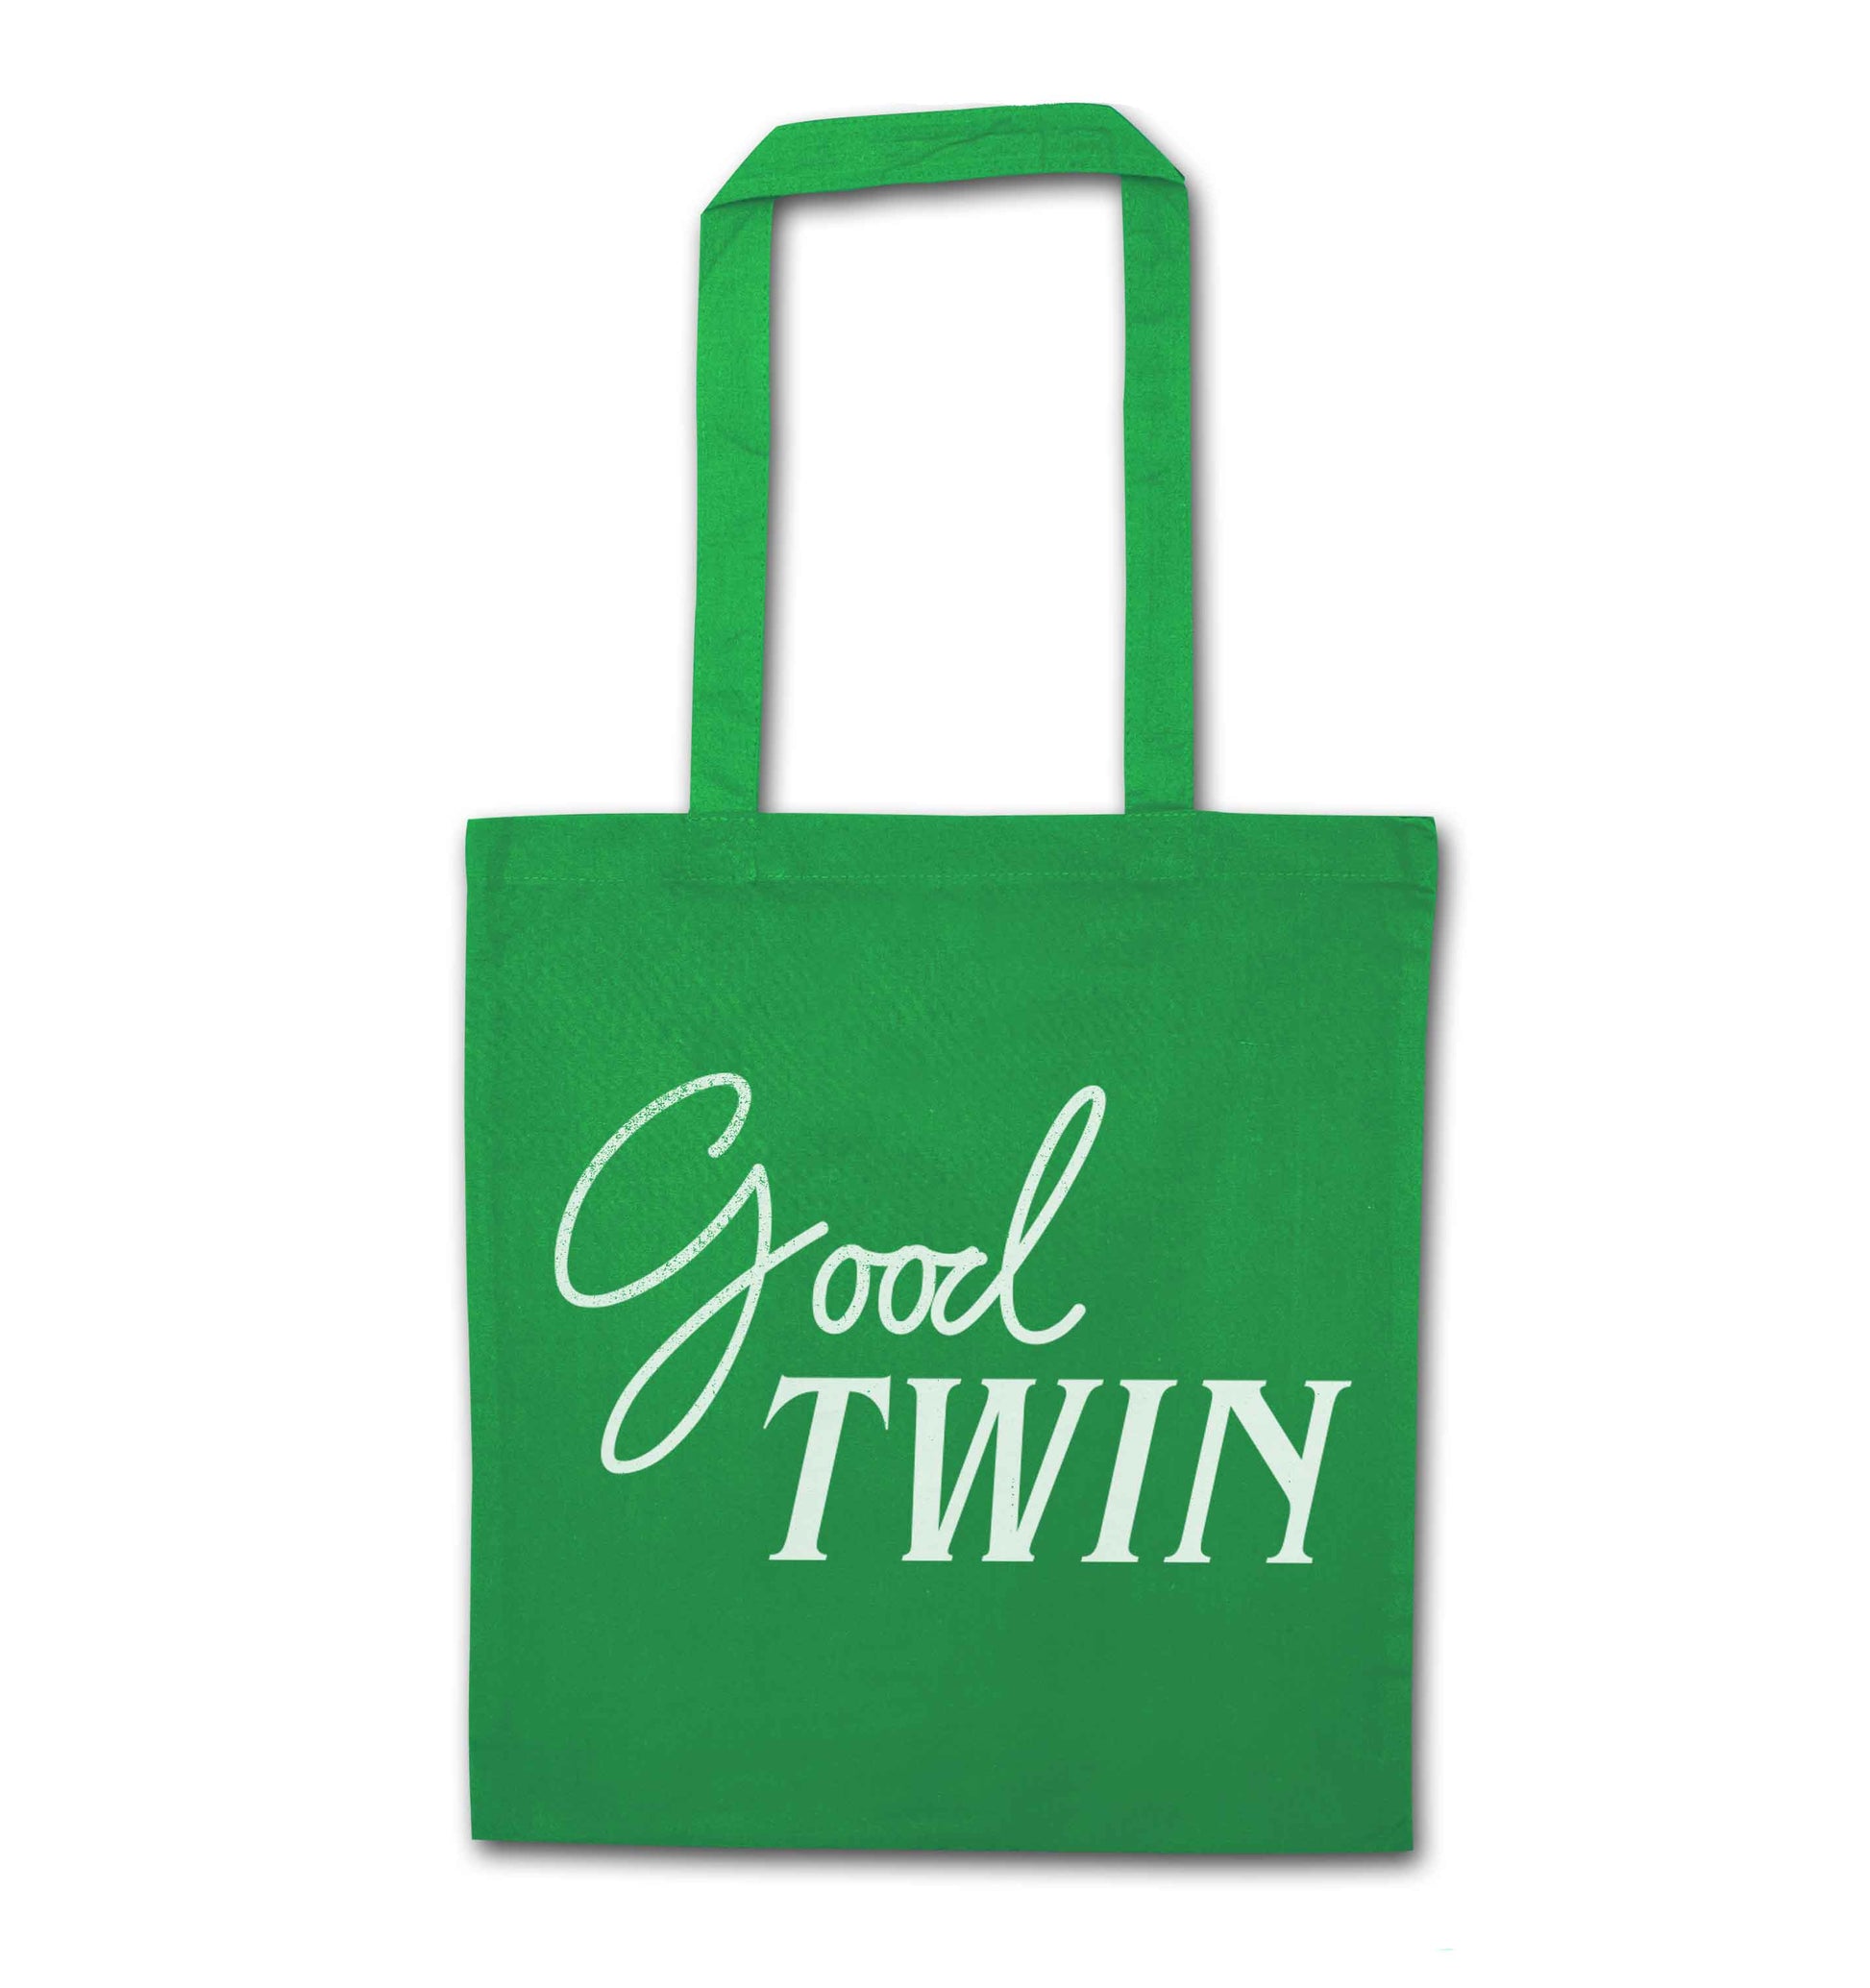 Good twin green tote bag